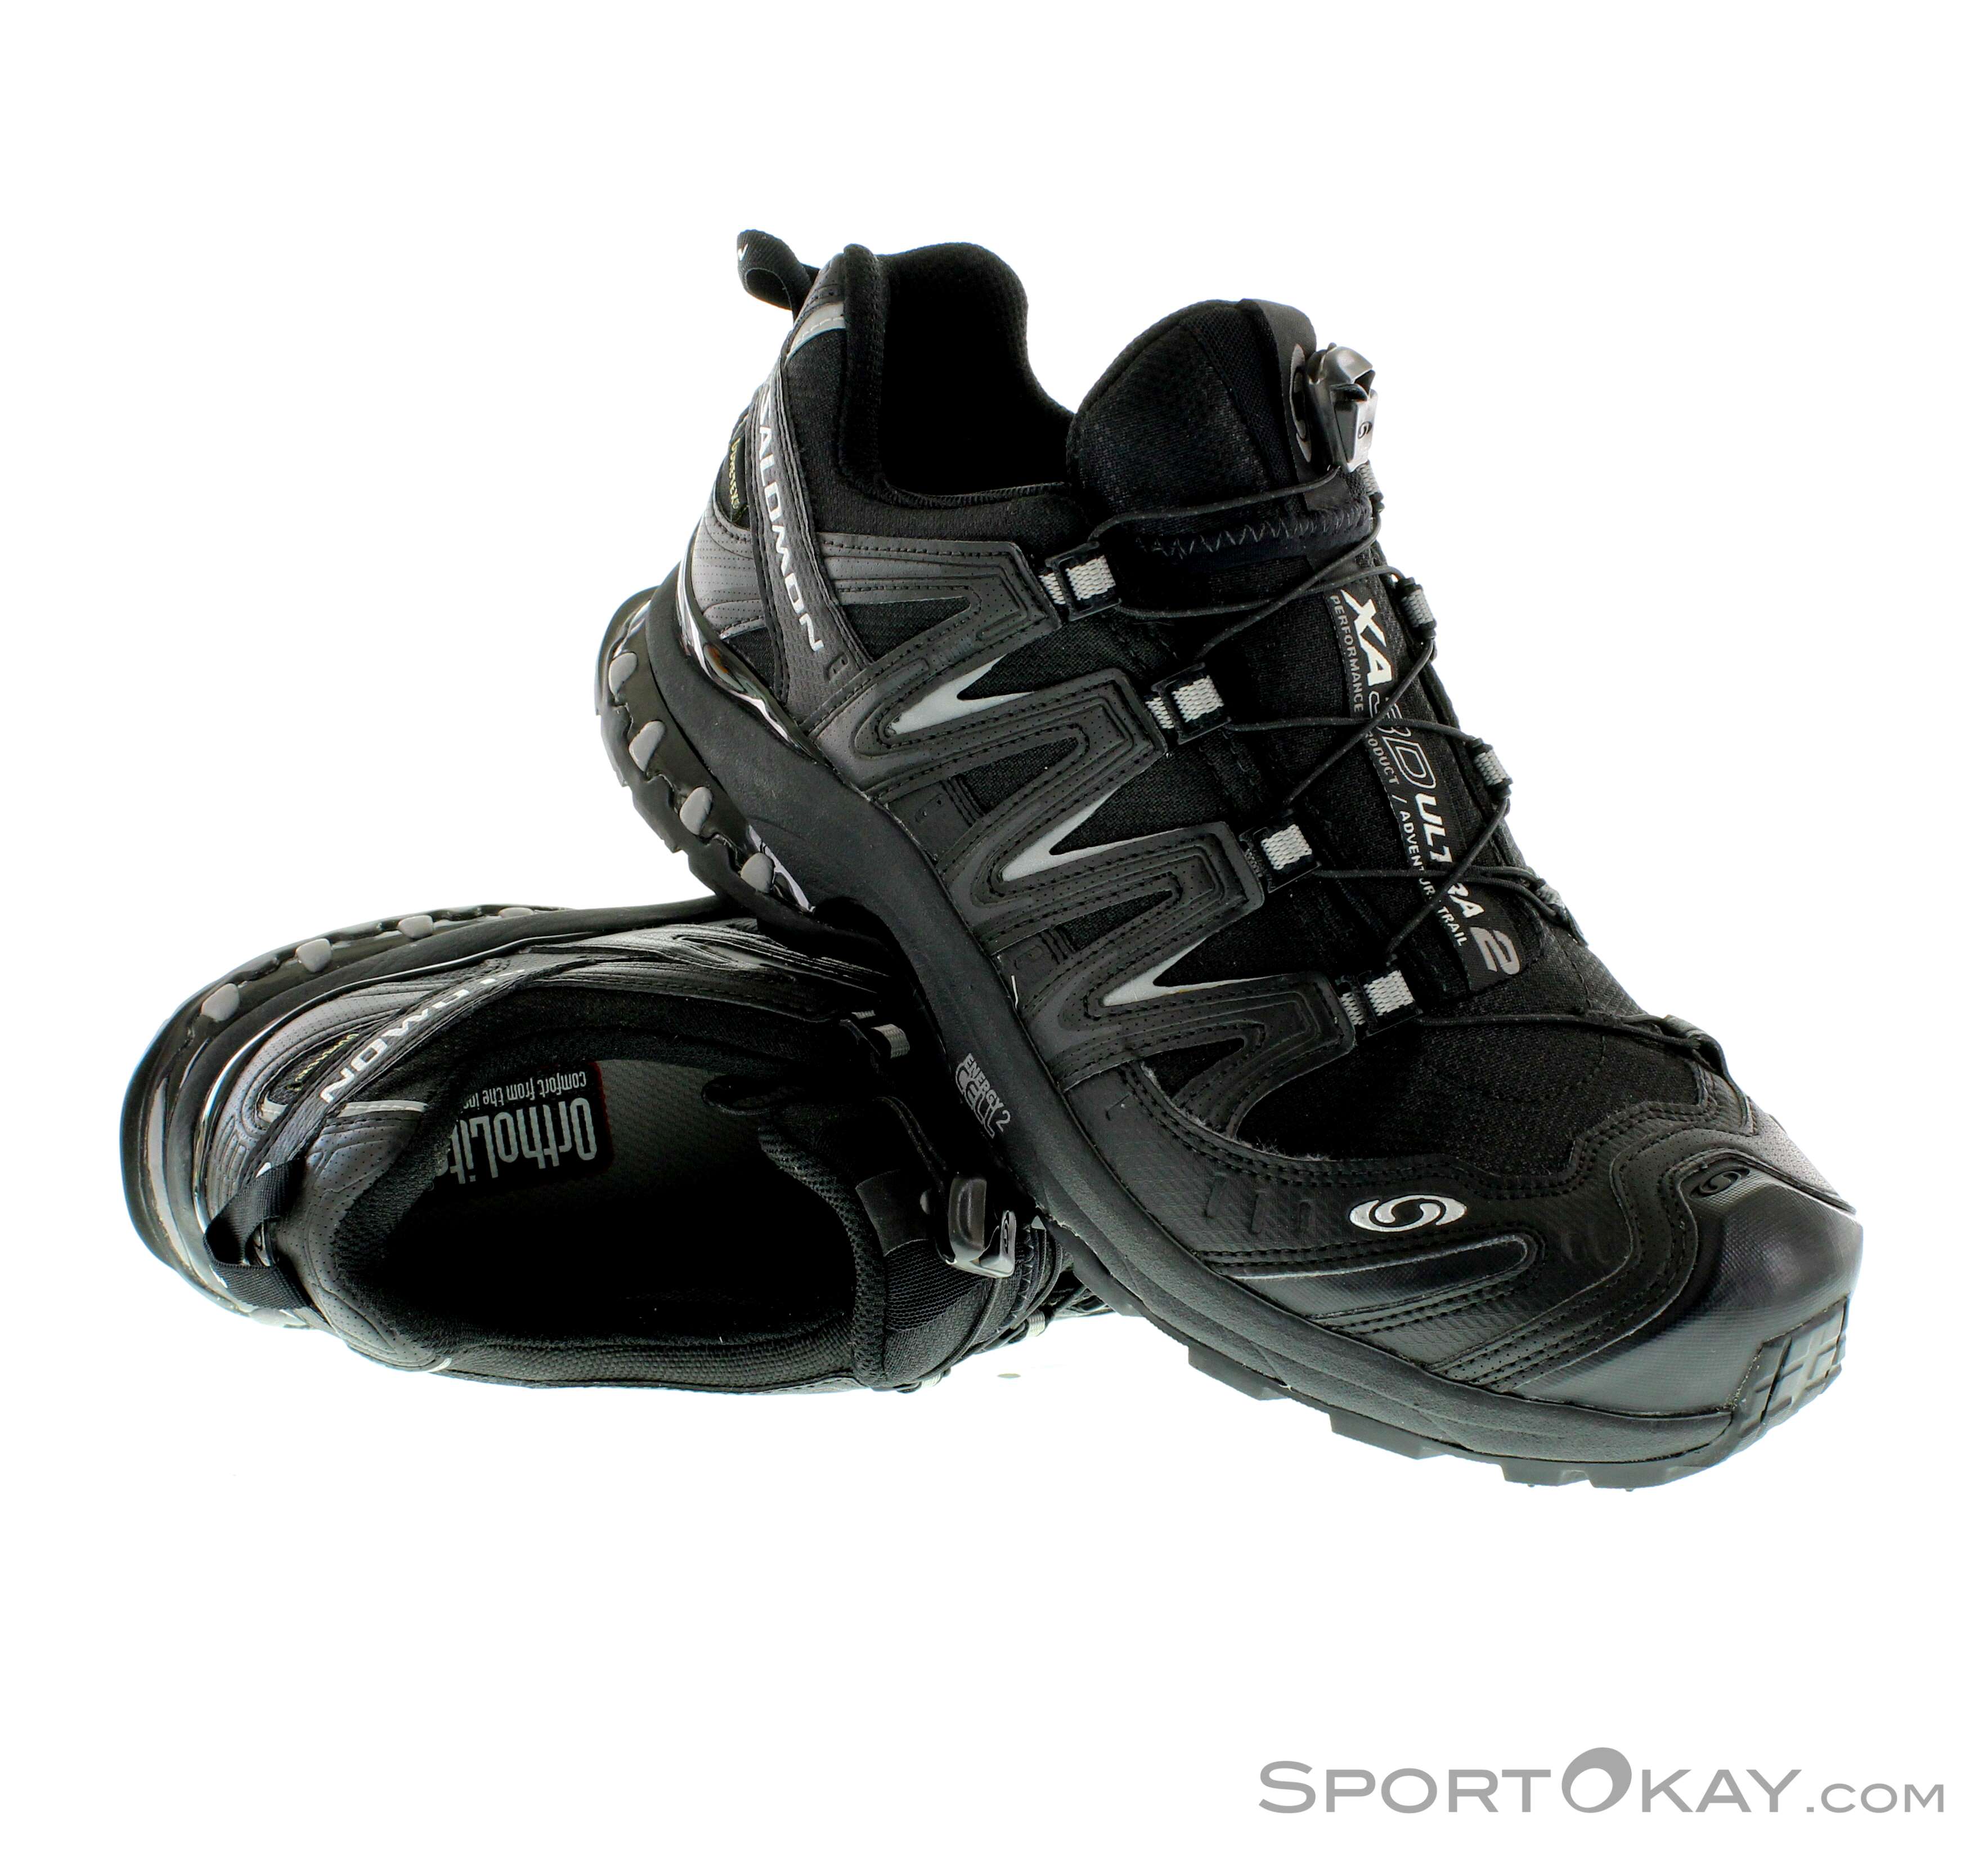 Soepel vasthouden optellen Salomon XA Pro 3D Ultra2 GTX Herren Traillaufschuhe Gore-Tex -  Traillaufschuhe - Laufschuhe - Running - Alle